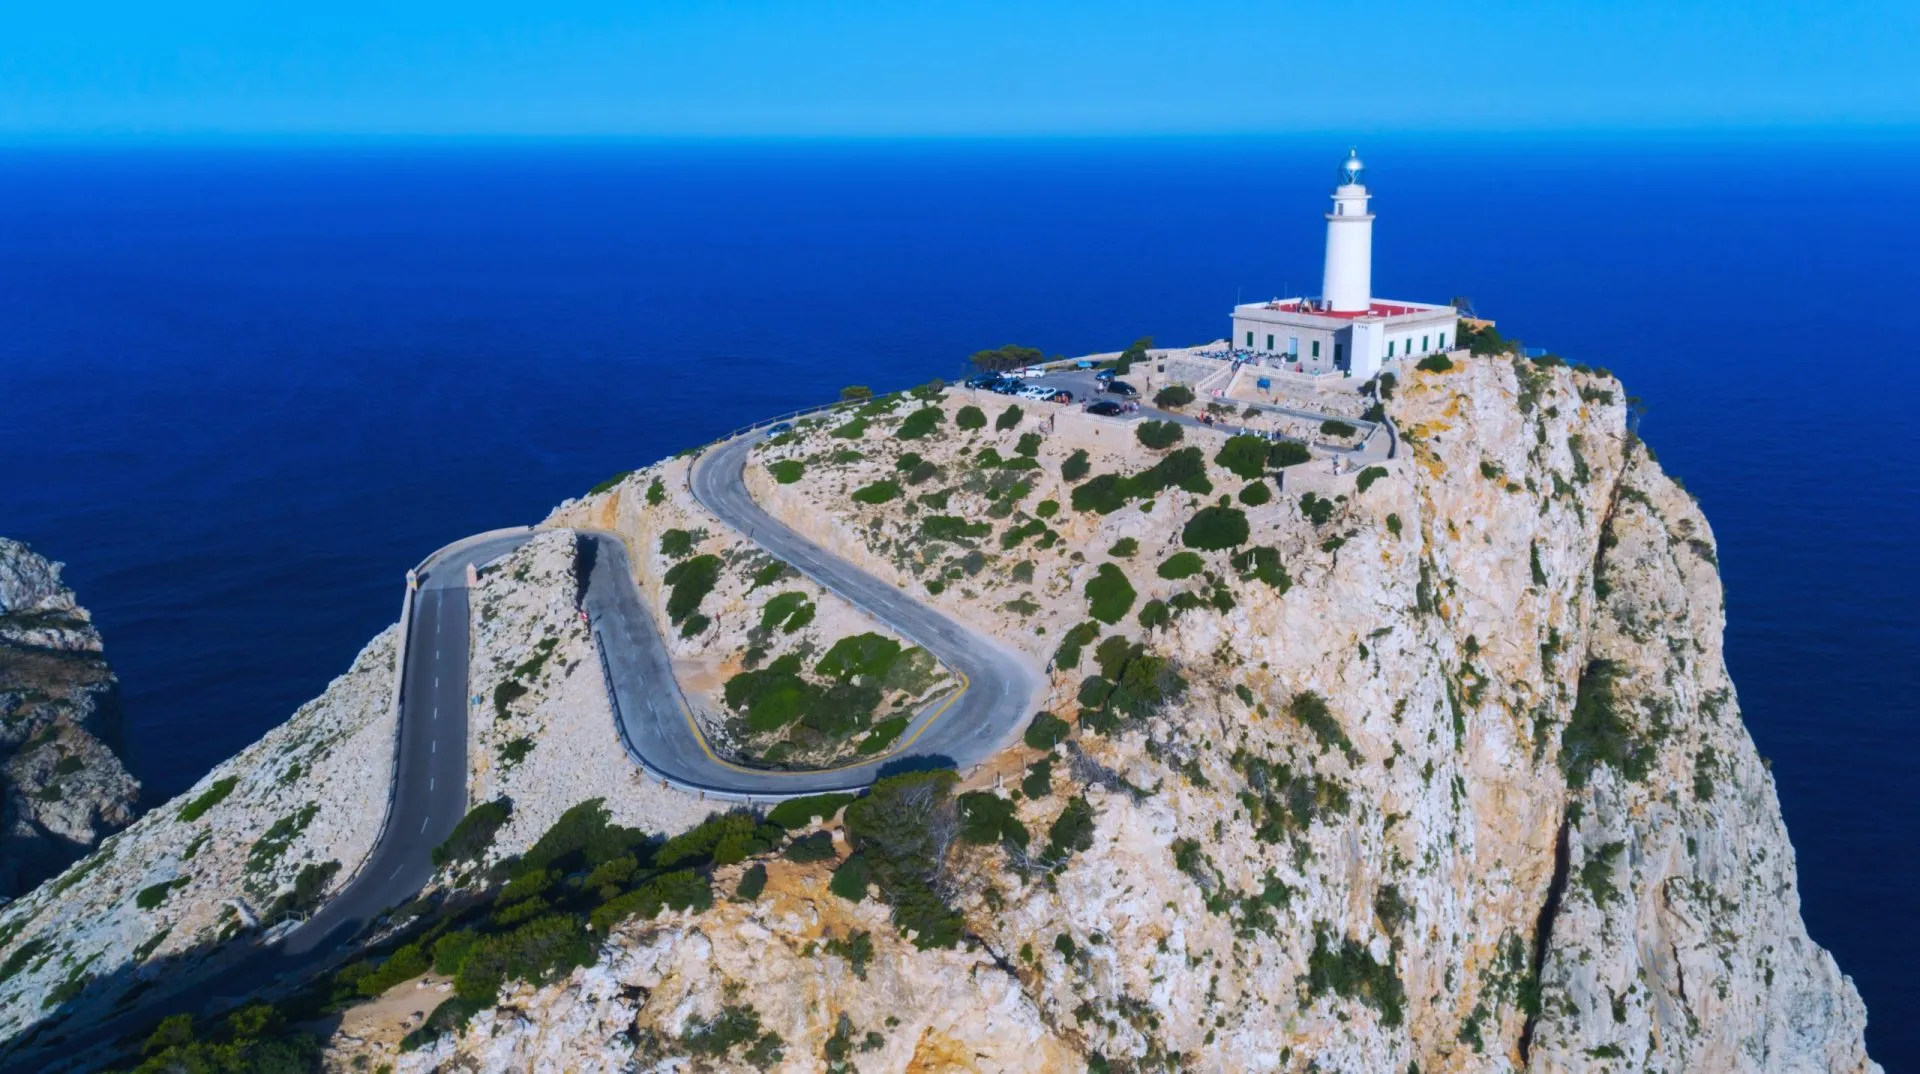 Luftfoto af fyrtårnet ved Kap Formentor på den nordlige del af Mallorcas kyst, Spanien (Balearerne).